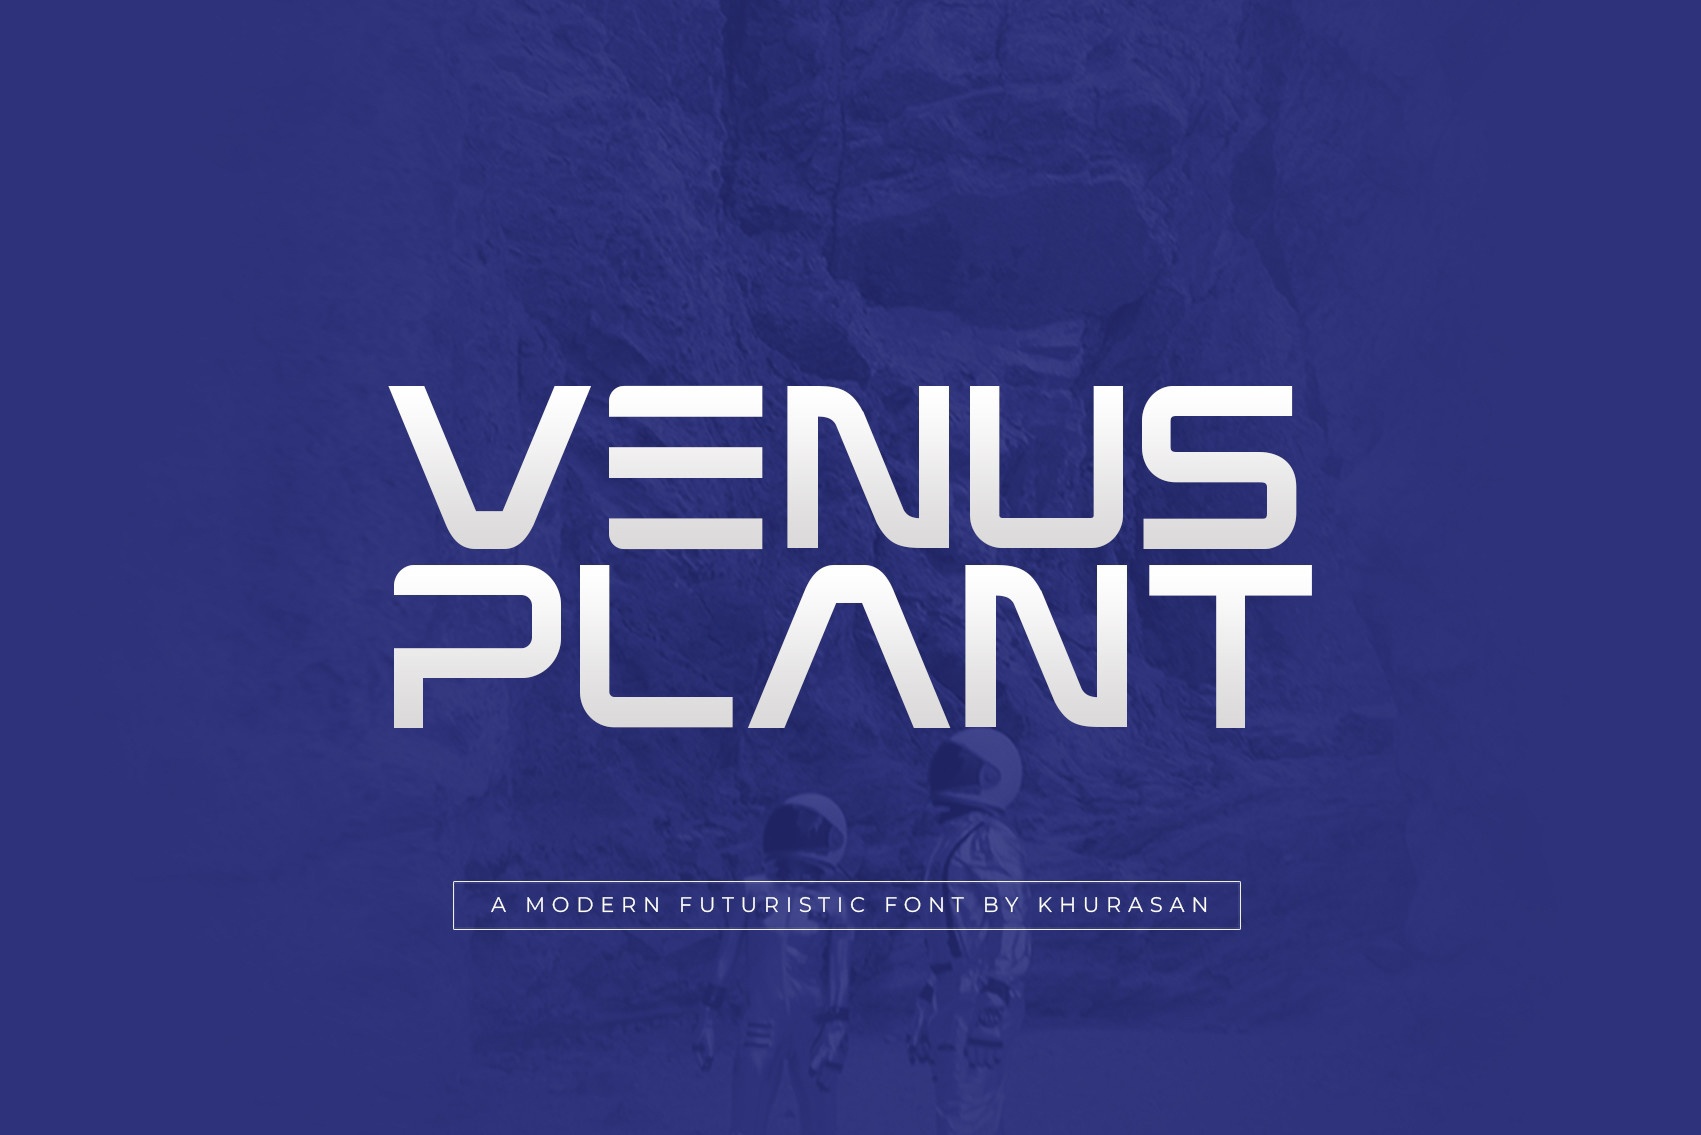 Beispiel einer Venus Plant-Schriftart